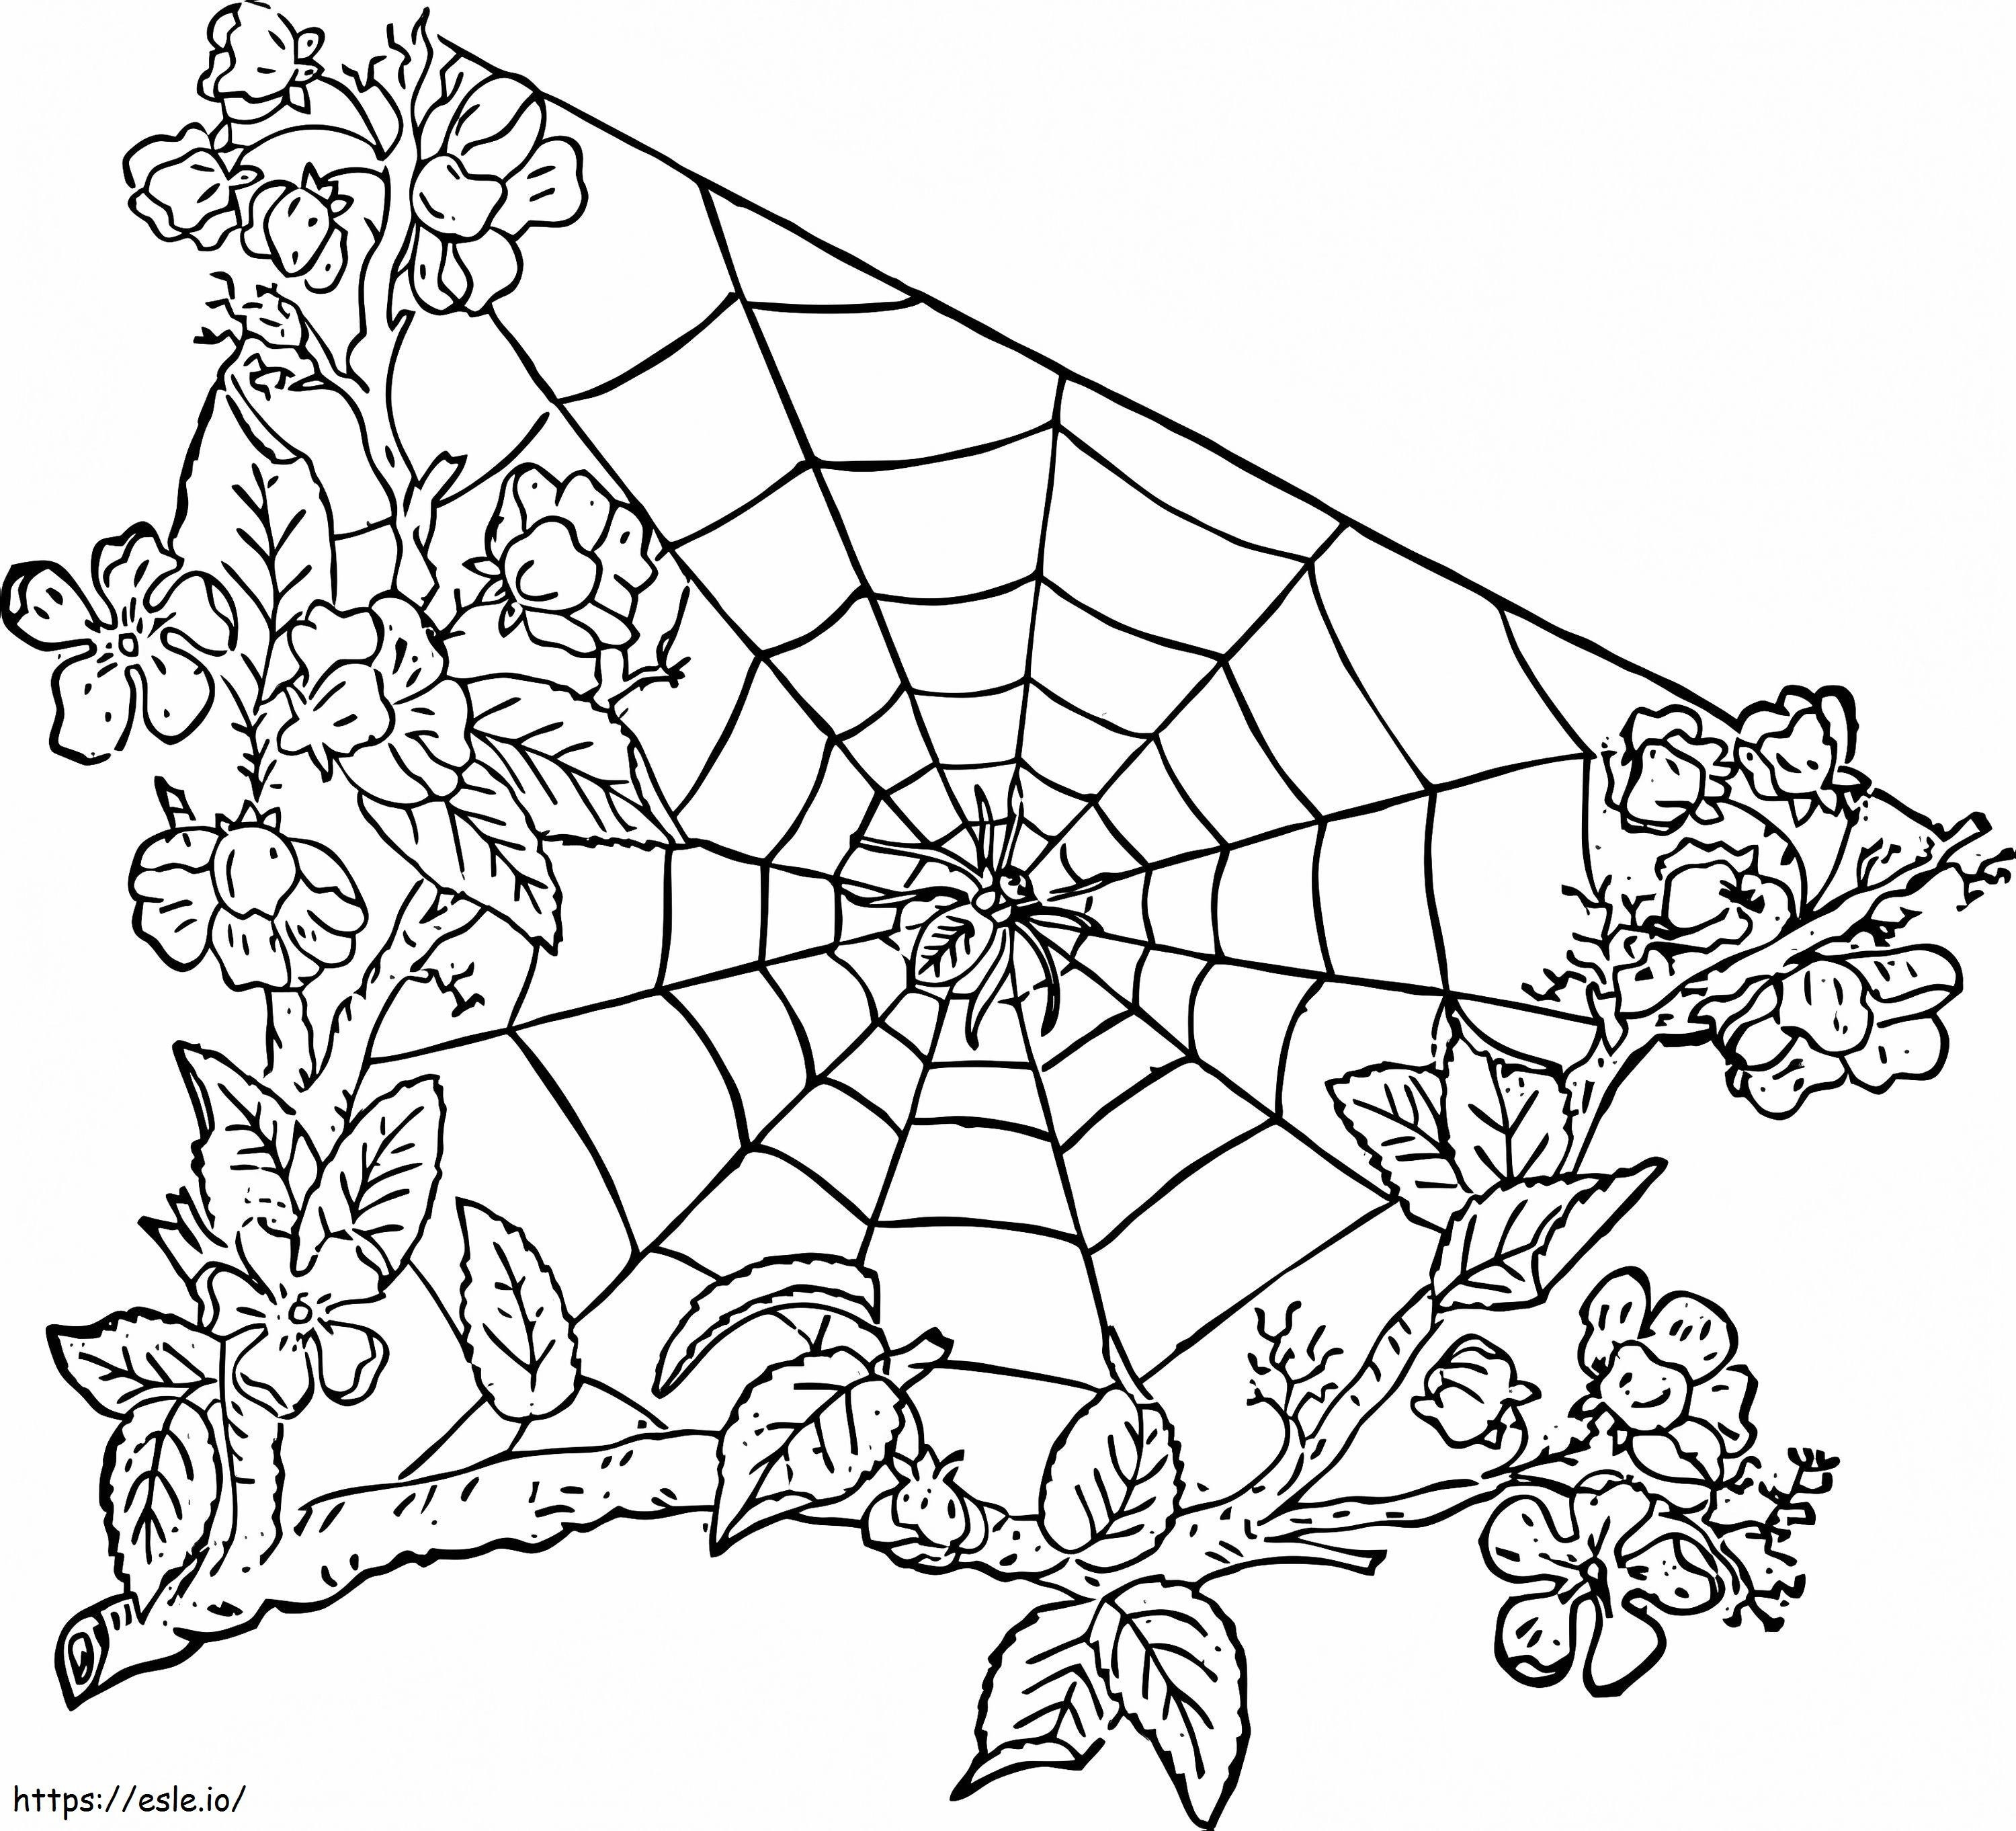 Araña en tela de araña 5 para colorear